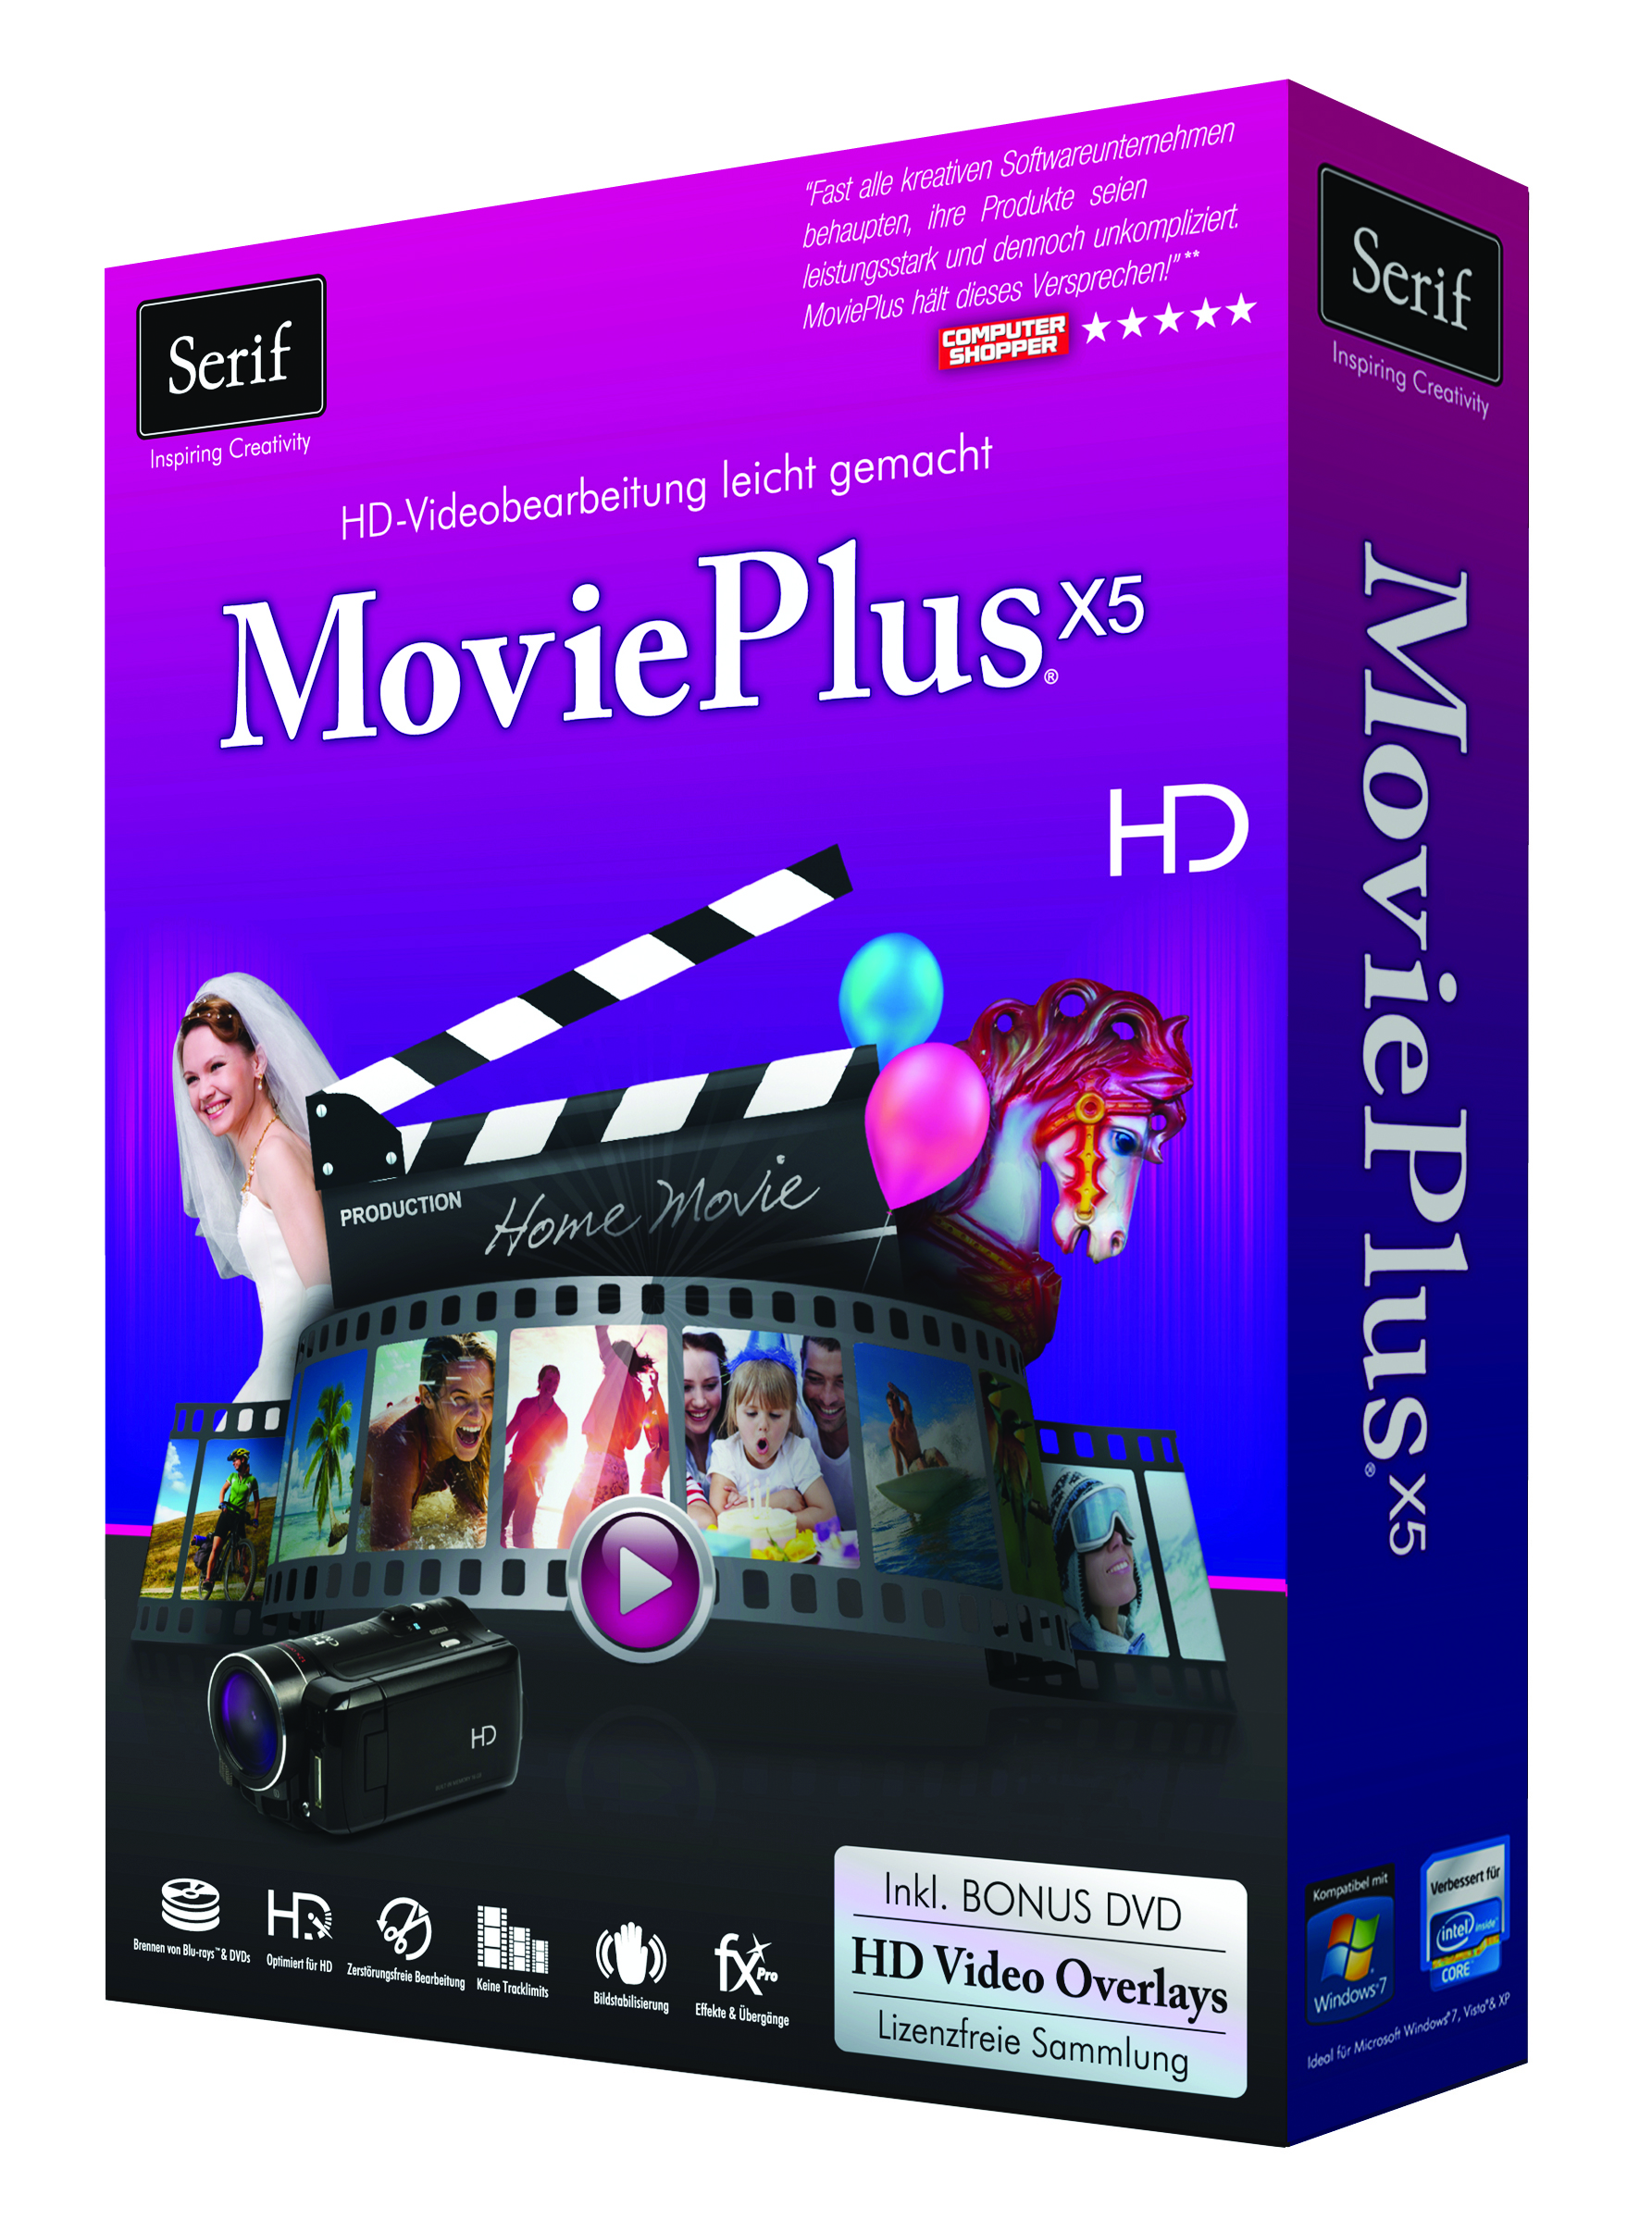 MoviePlusX5 3D front rechts 300dpi CMYK